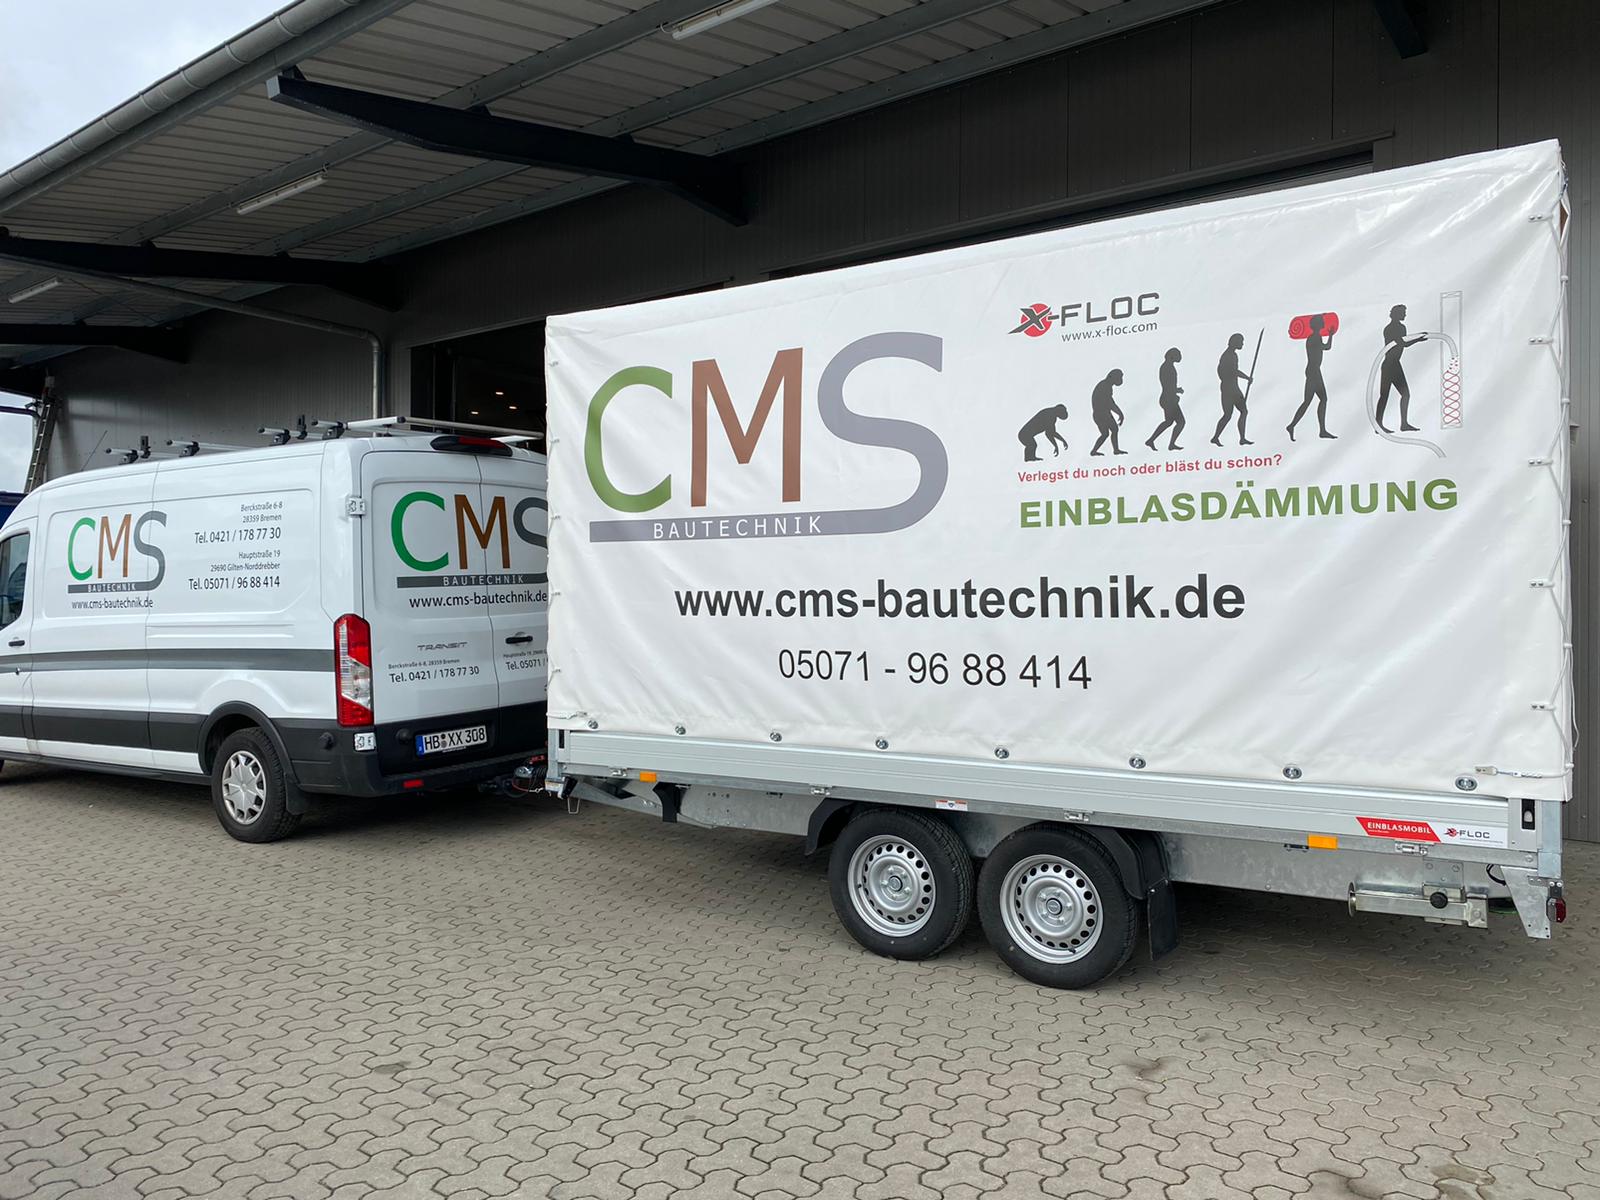 Der X-Floc Anhänger hinter einem Firmenwagen der CMS Bautechnik GmbH.